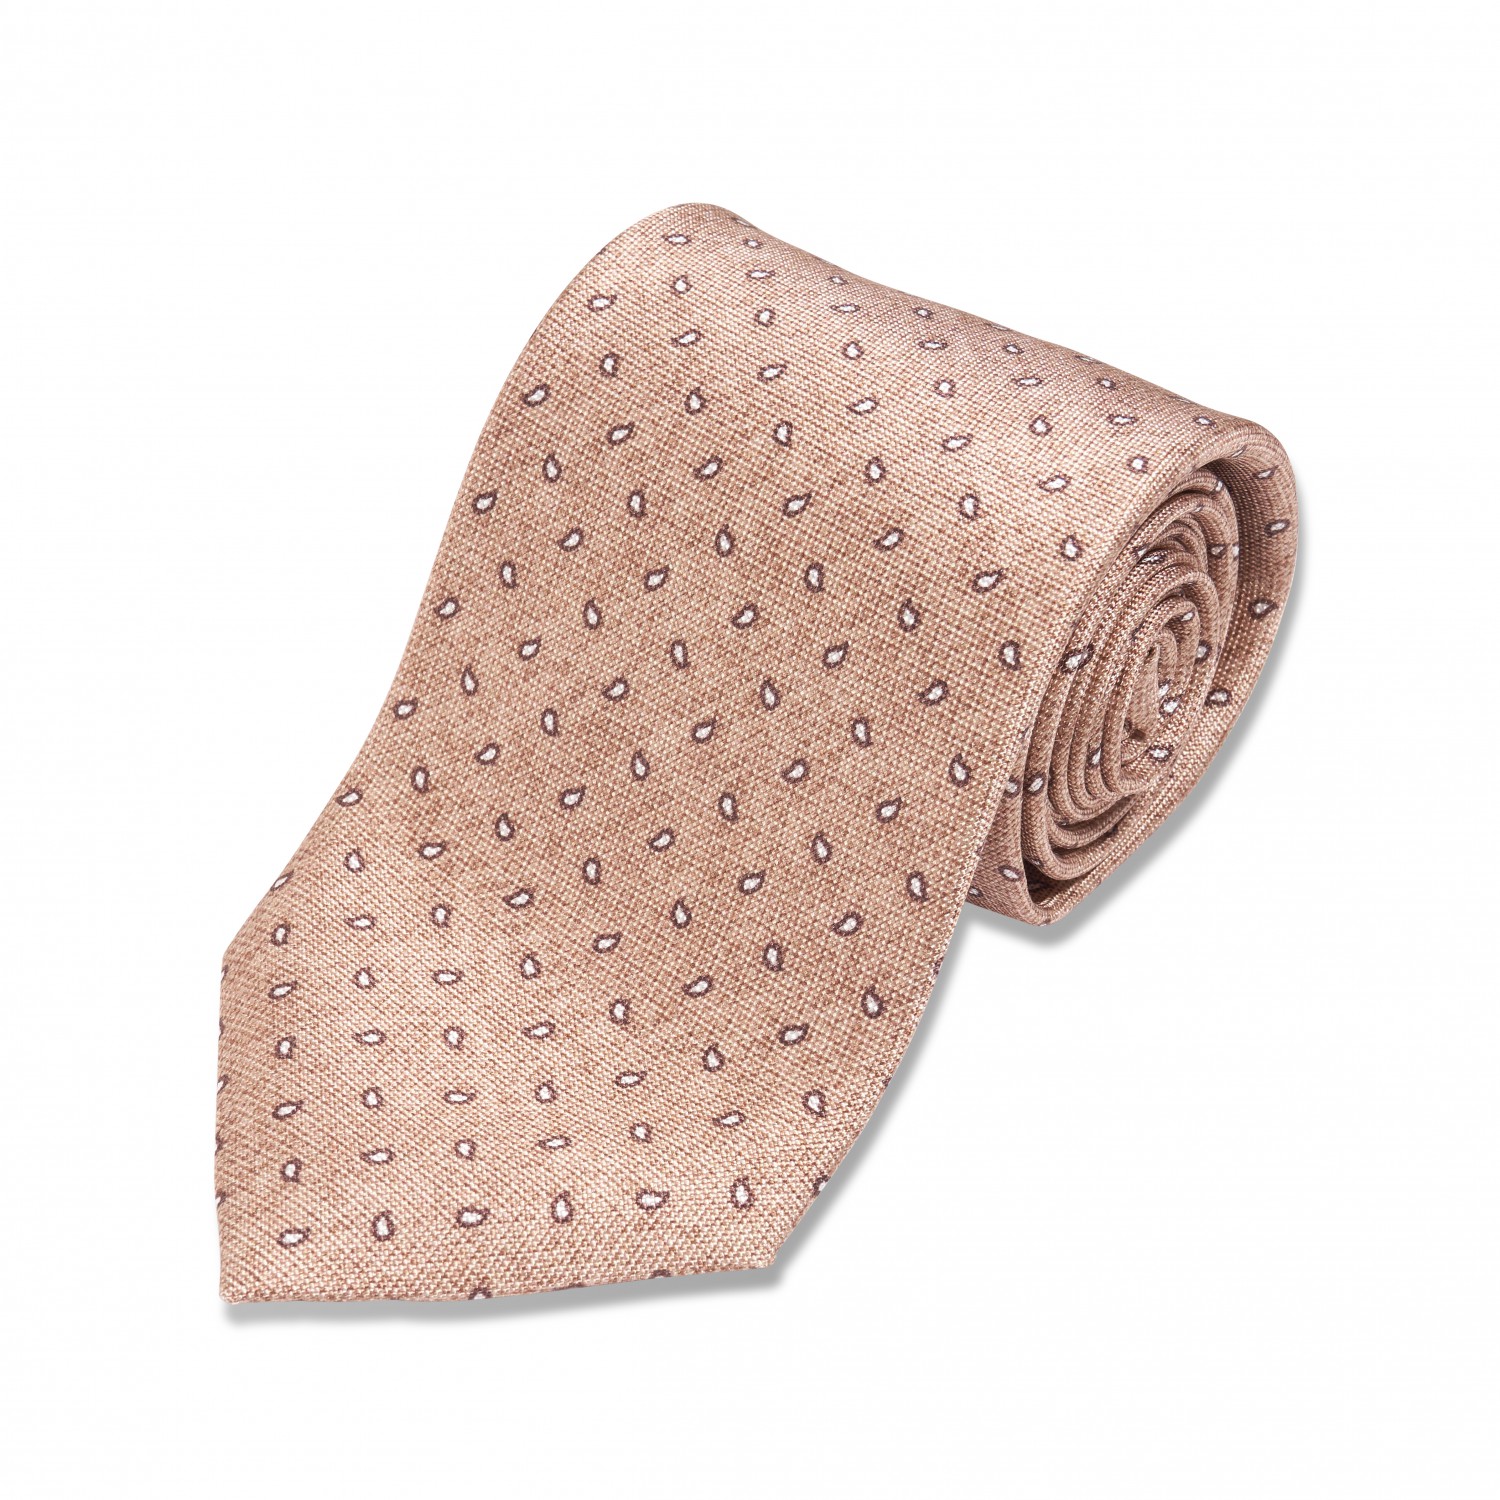 Tan w/ Brown & White Dots Silk Necktie